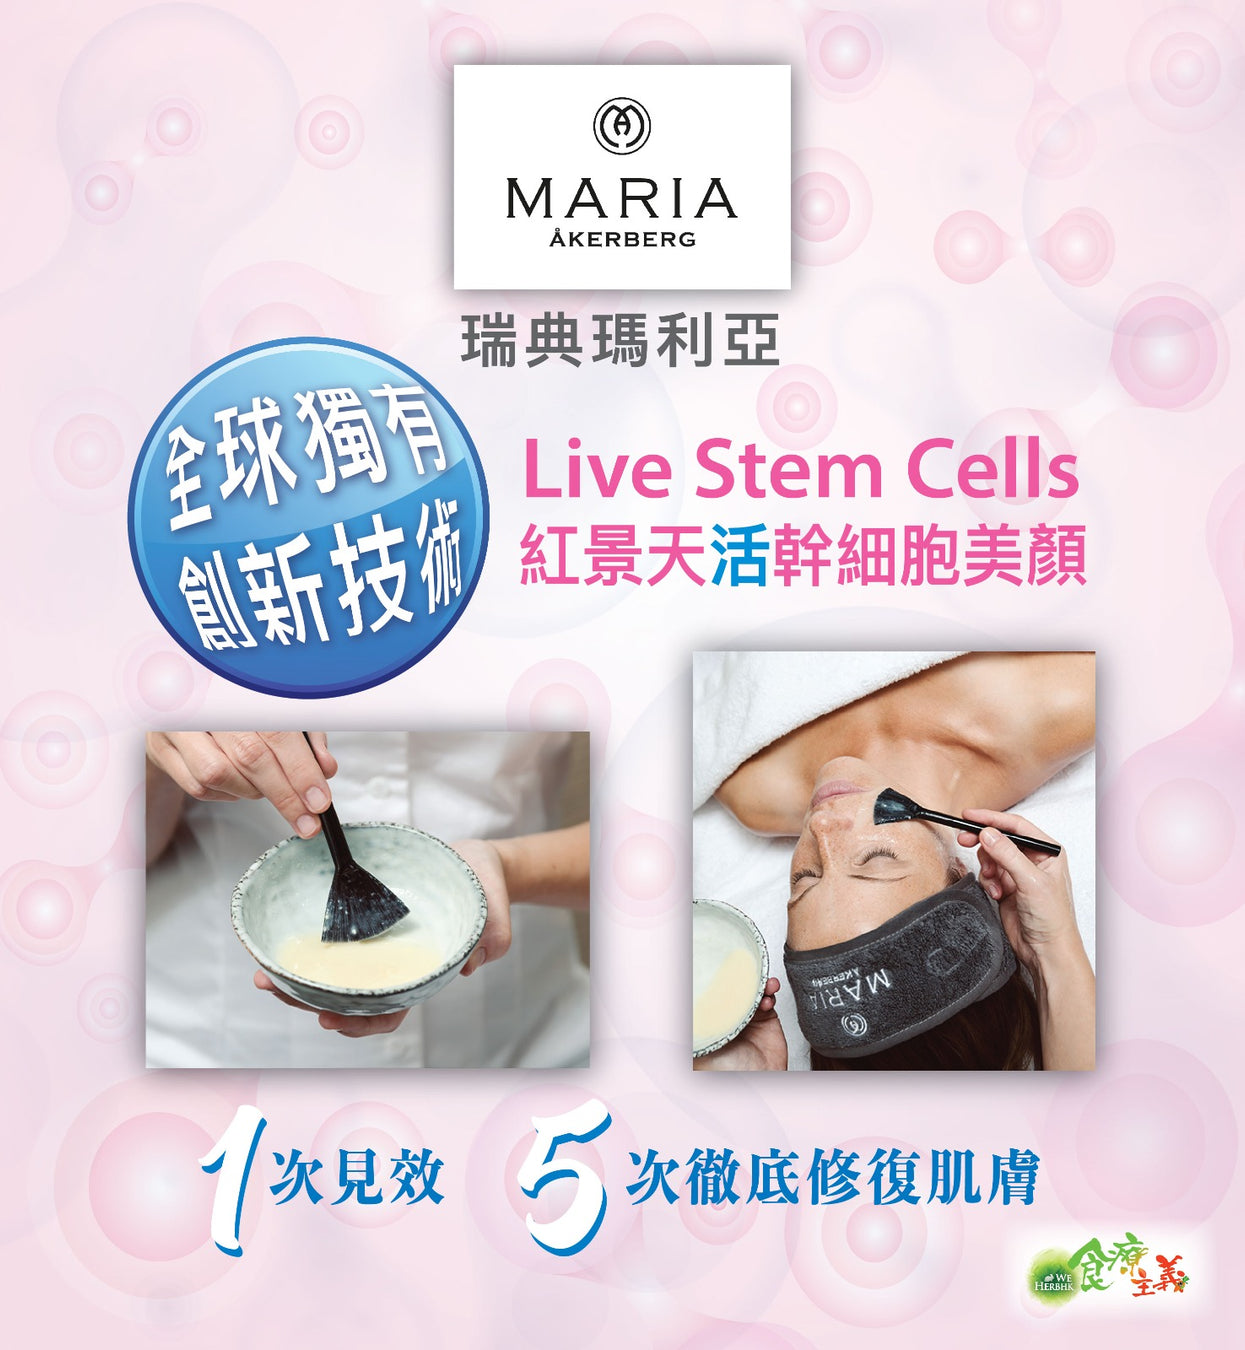 紅景天活幹細胞美顏 Maria Akerberg Live Stem Cell Facial